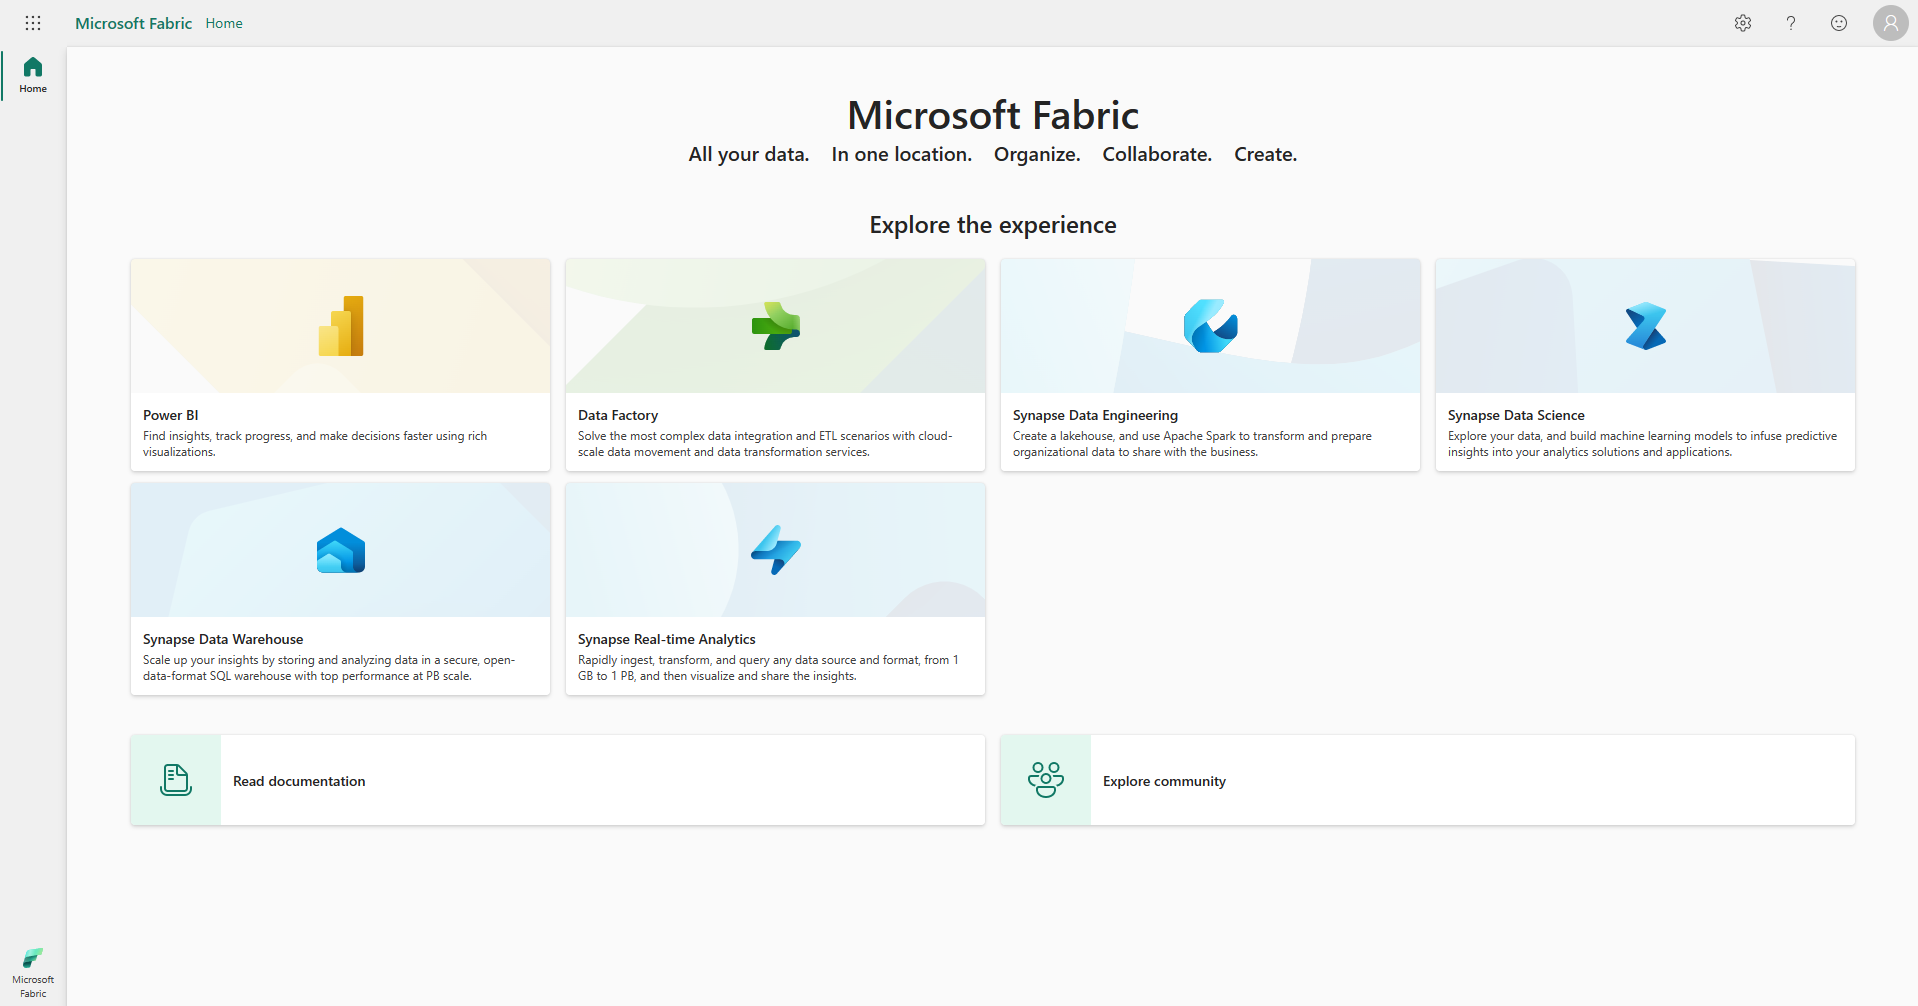 Captura de pantalla de la página principal de Microsoft Fabric con el Administrador de cuentas delimitado en rojo.